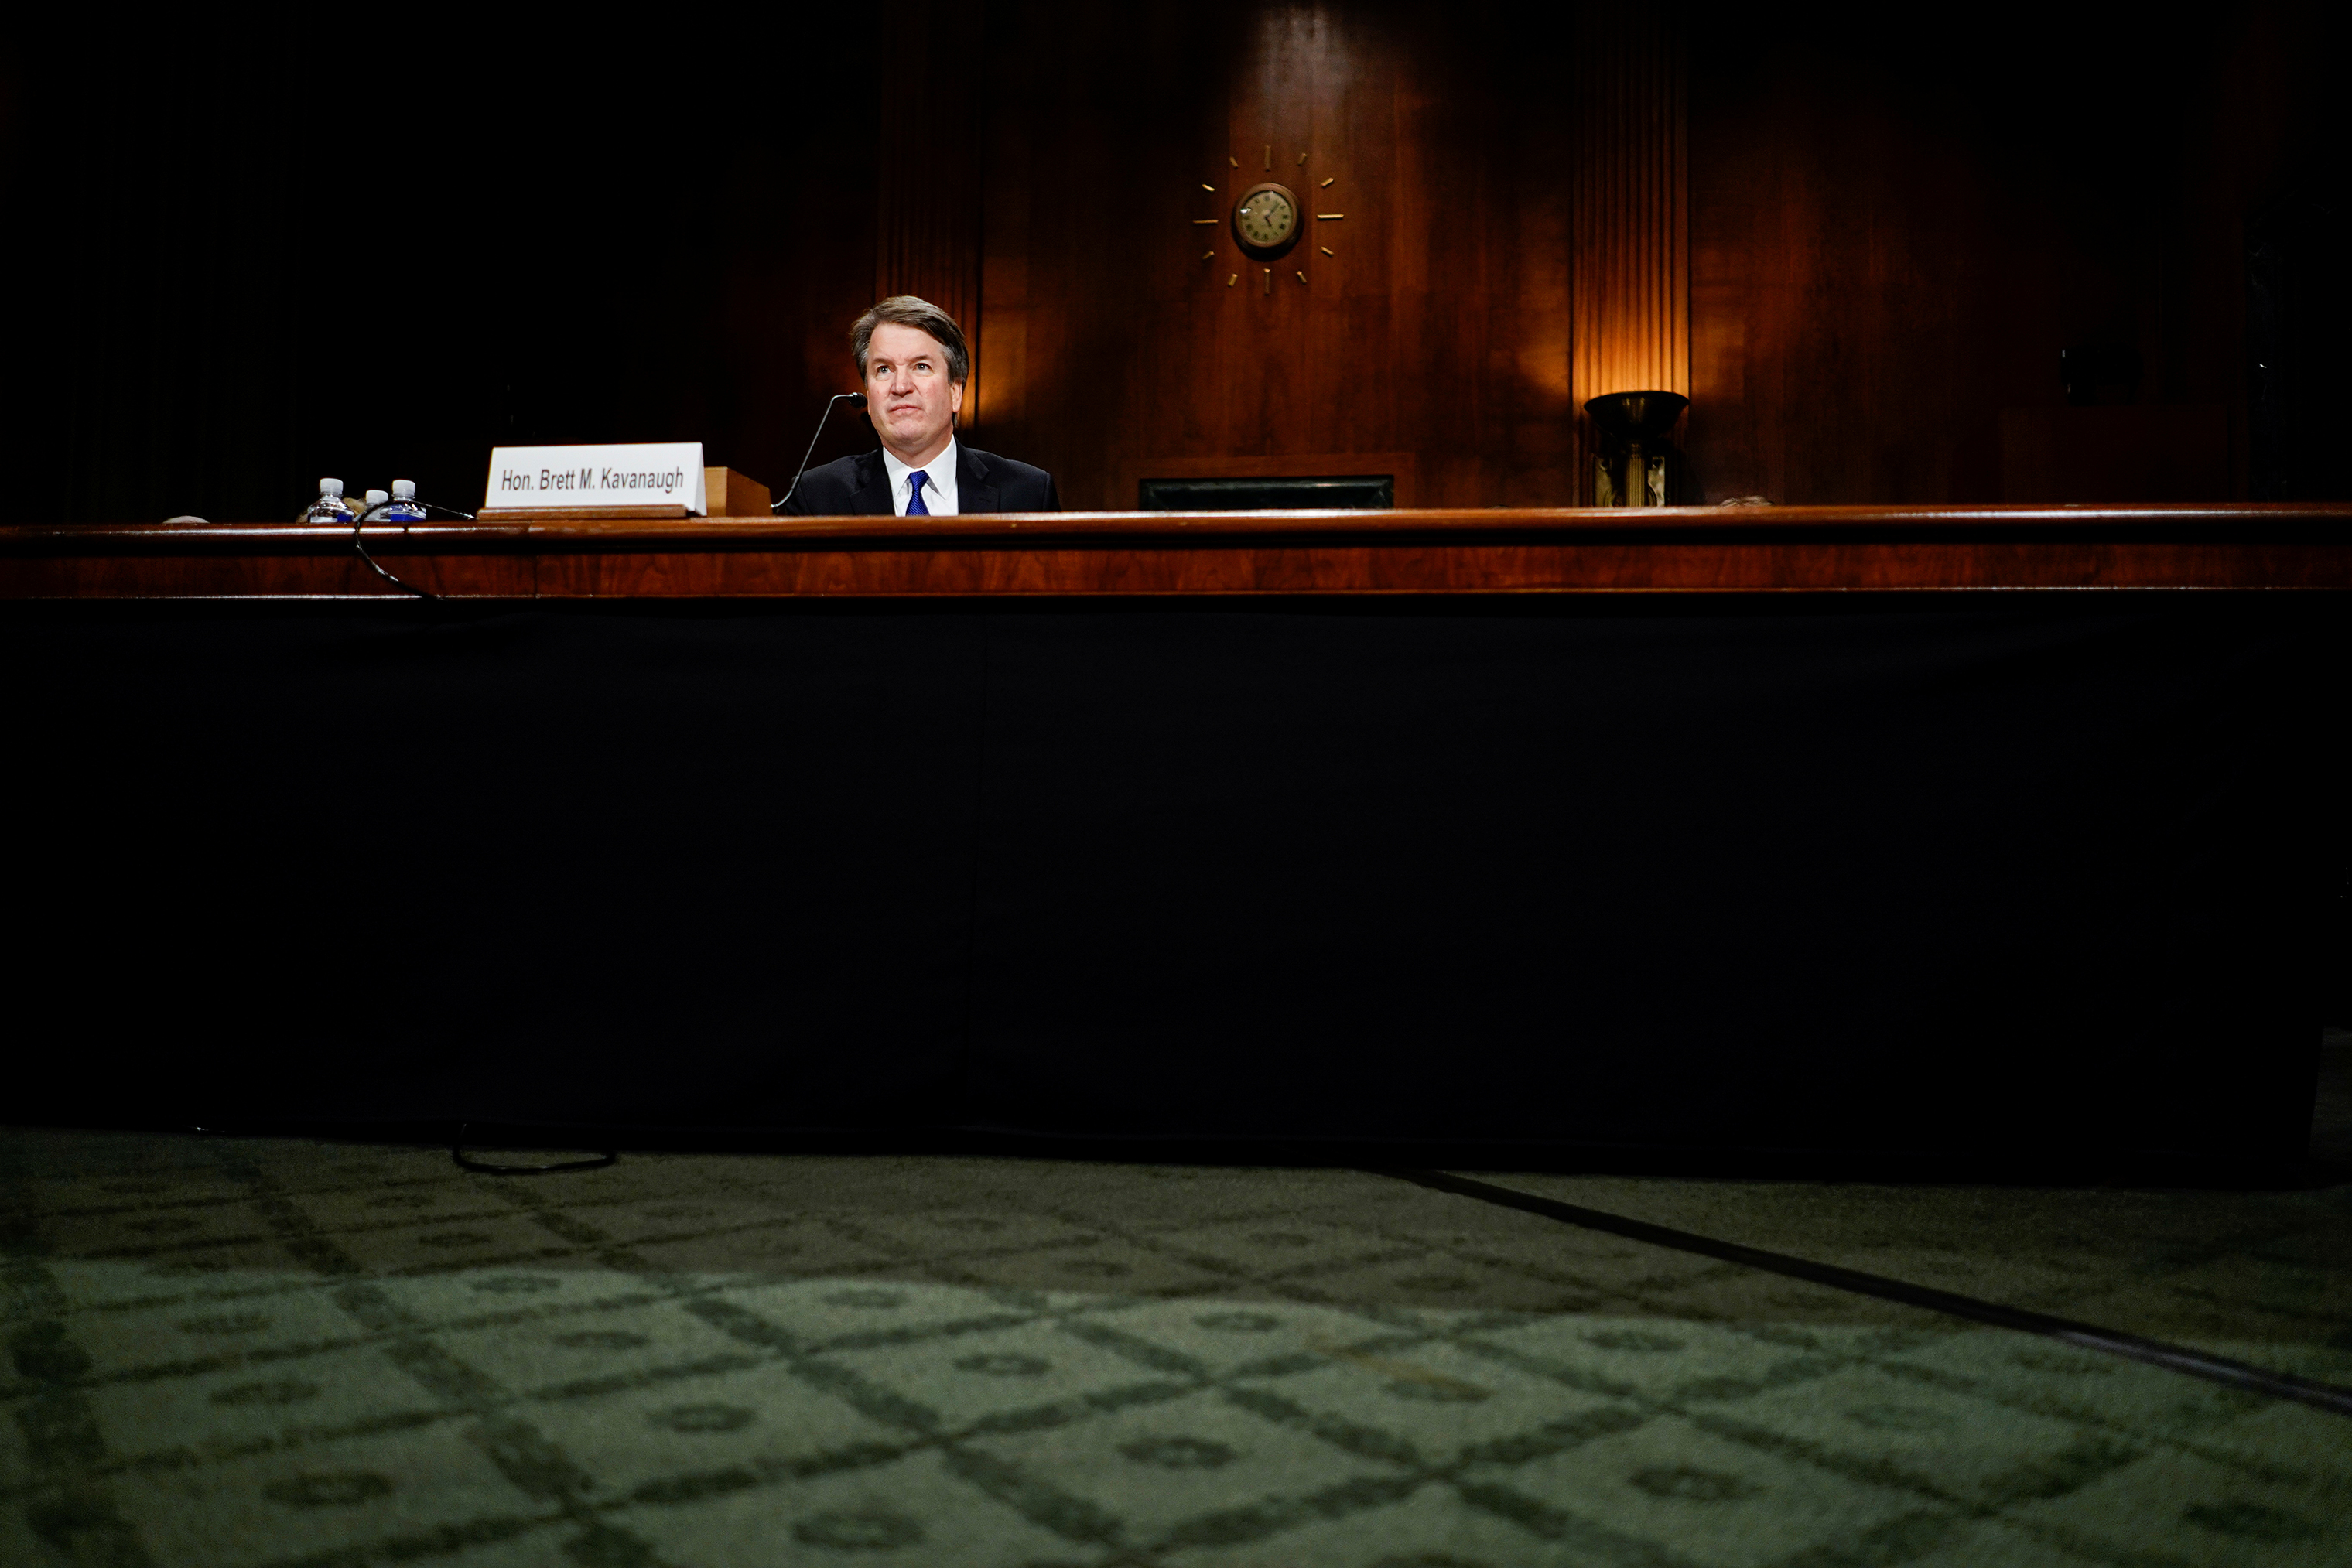 Judge Brett M. Kavanaugh at the Senate Judiciary Committee hearing on Sept. 27. (Melina Mara—Pool/Reuters)